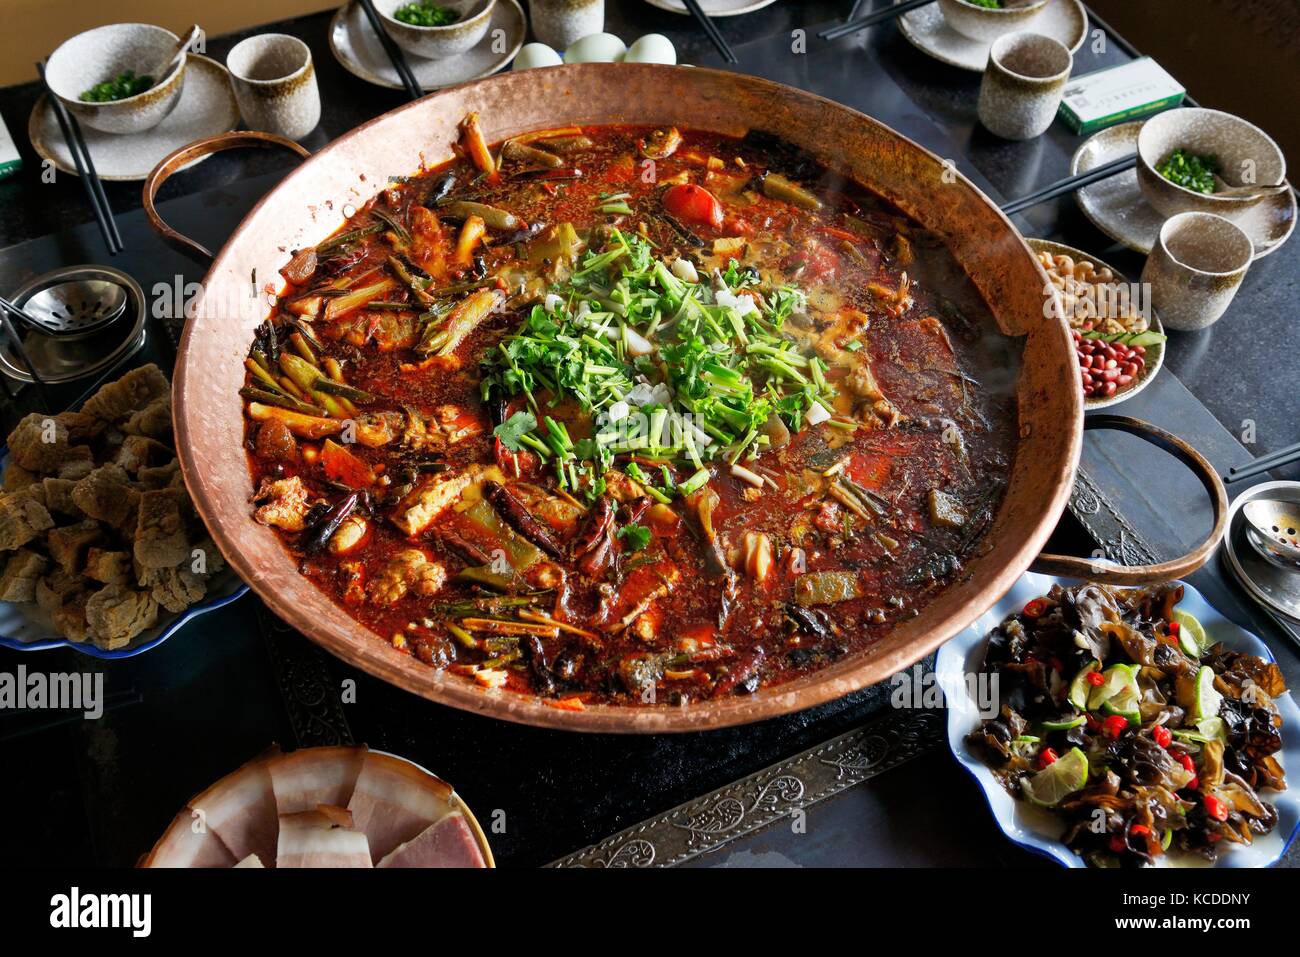 Comida tradicional china. Provincia de Yunnan estofado tradicional típico de pescado y verduras del grupo étnico Naxi gente en la orilla del lago lashi, Lijiang Foto de stock